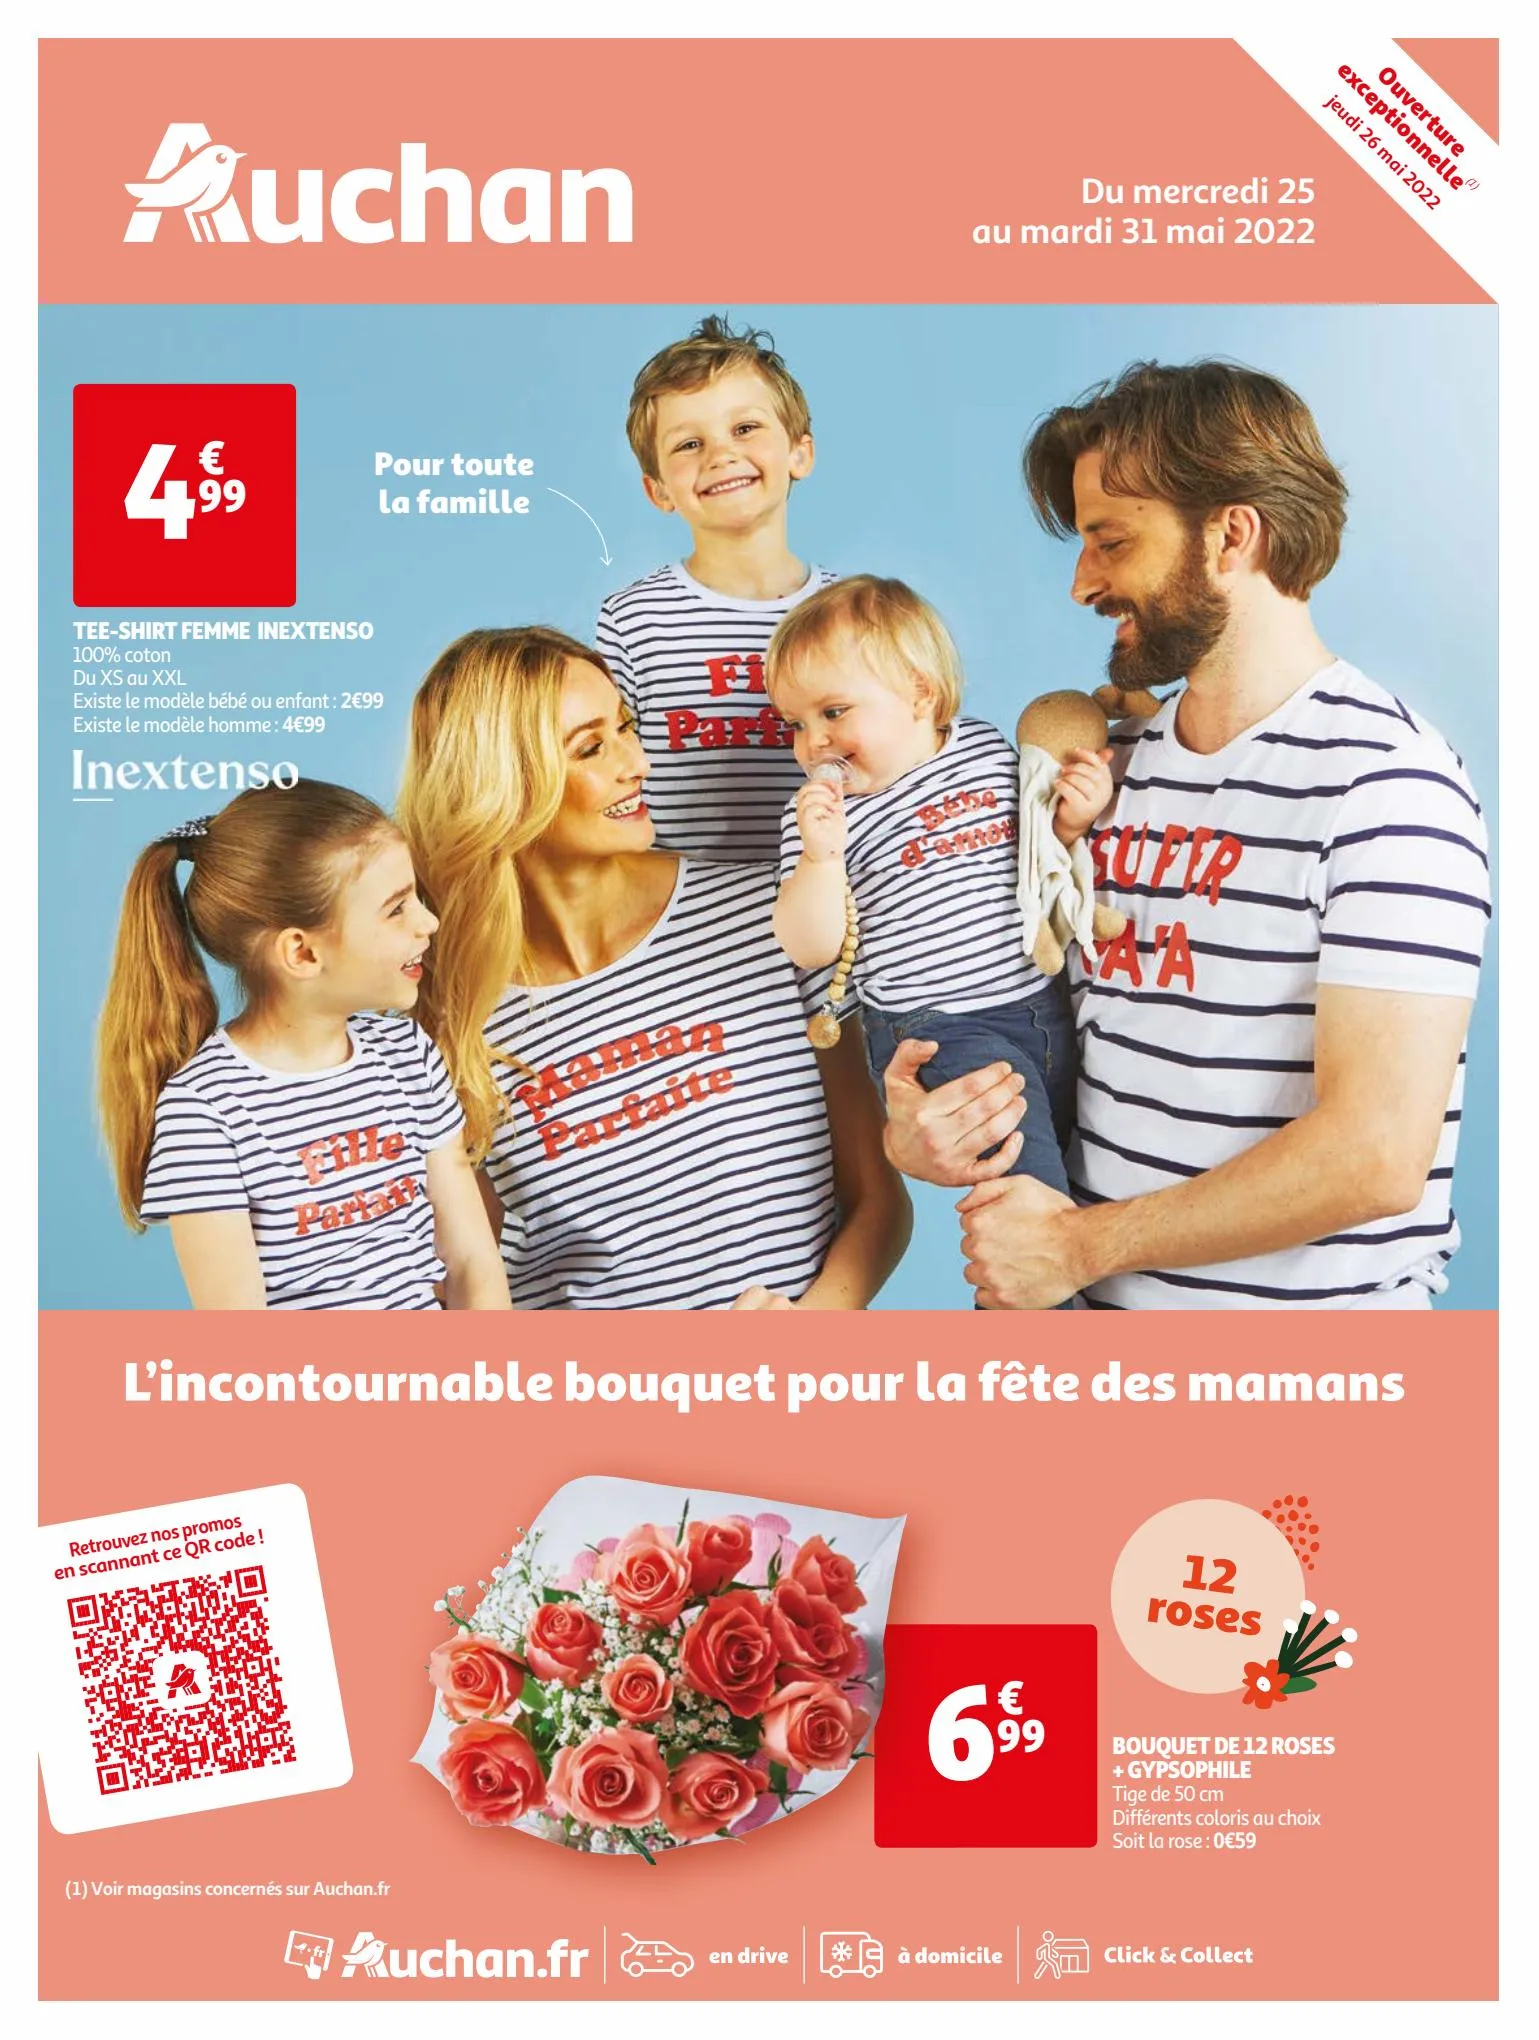 Catalogue L'incortounable bouquet pour la fête des mamans, page 00001